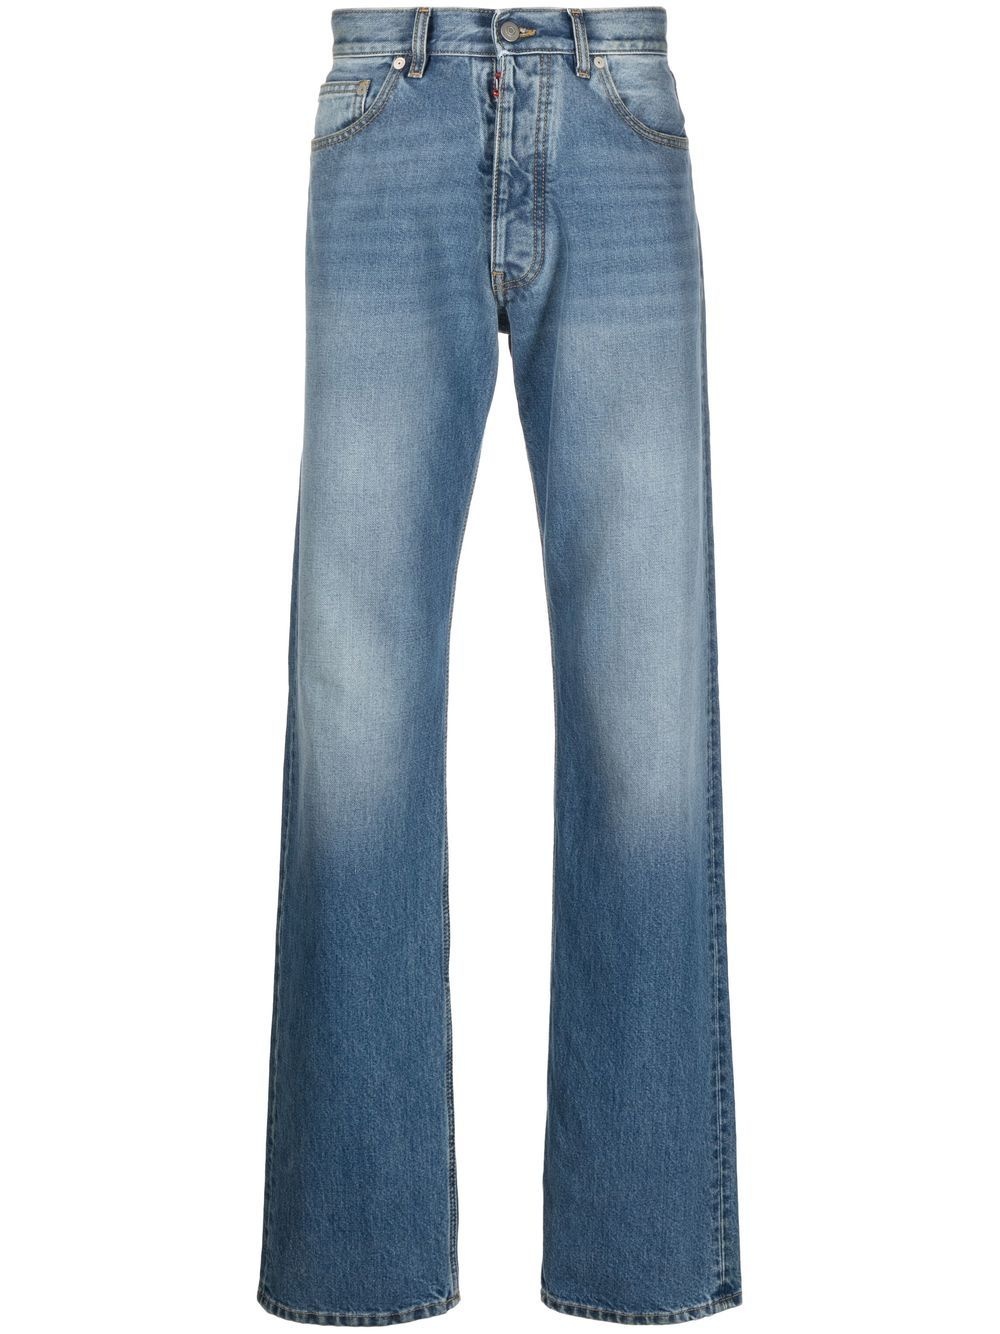 5-pocket denim jeans - 1